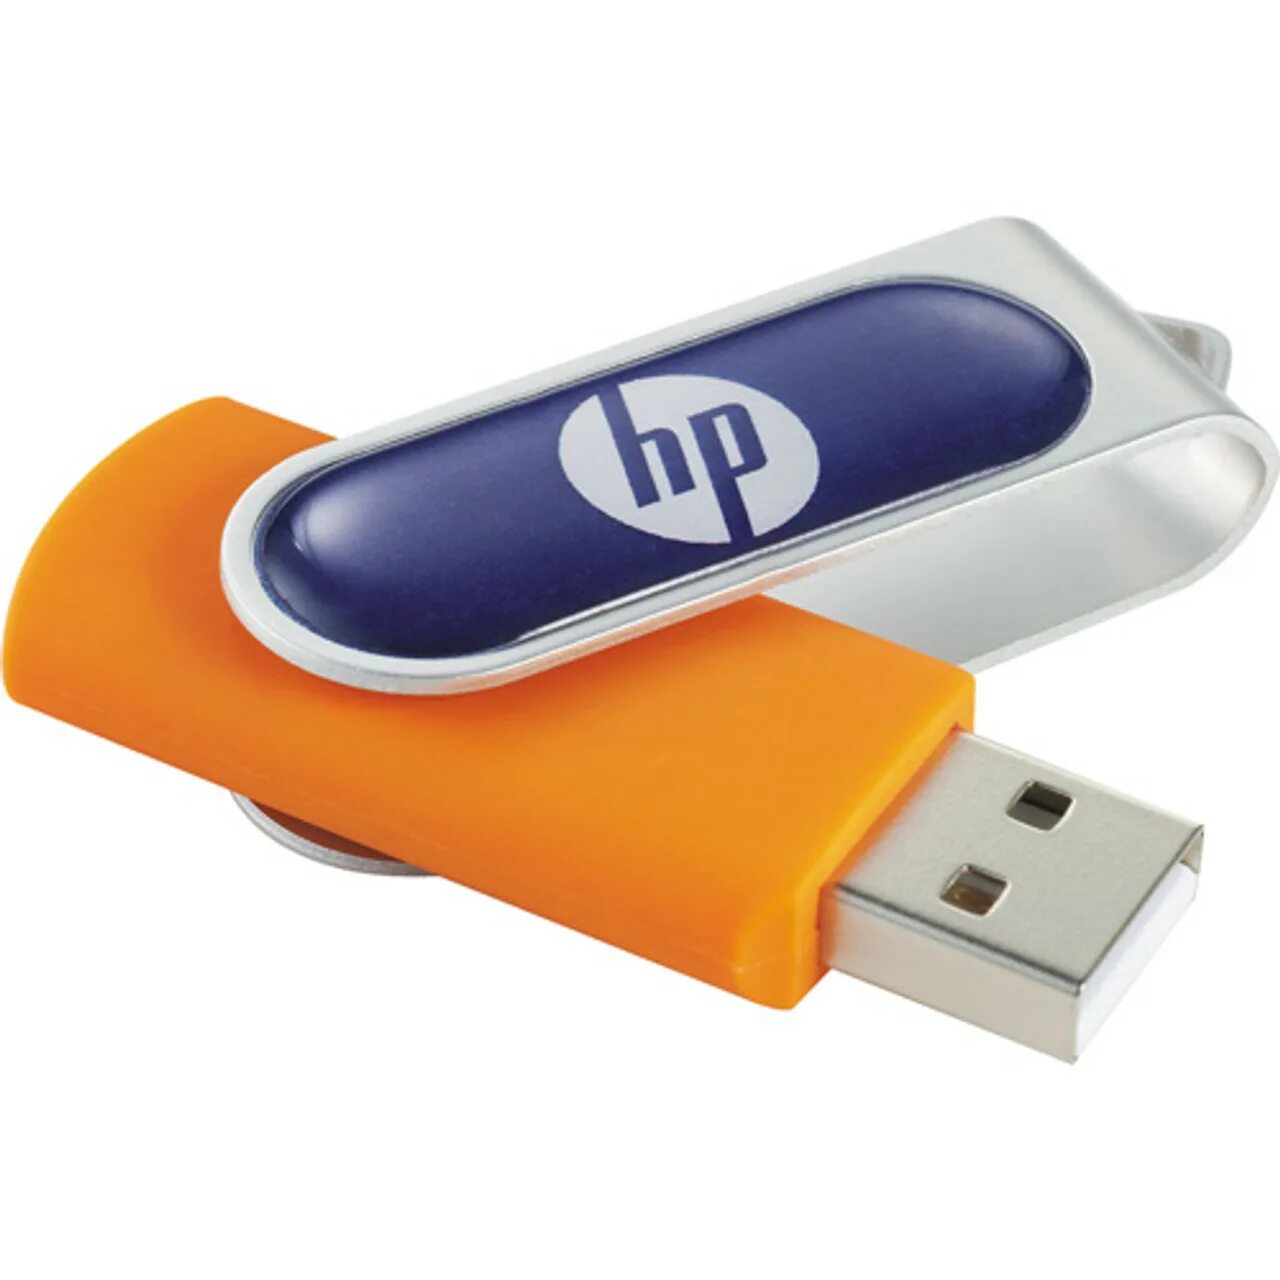 Портативная флешка купить. Накопитель Flash Drive 4gb. Одноразки флешки. Карманный накопитель USB. Брендированные флешки.